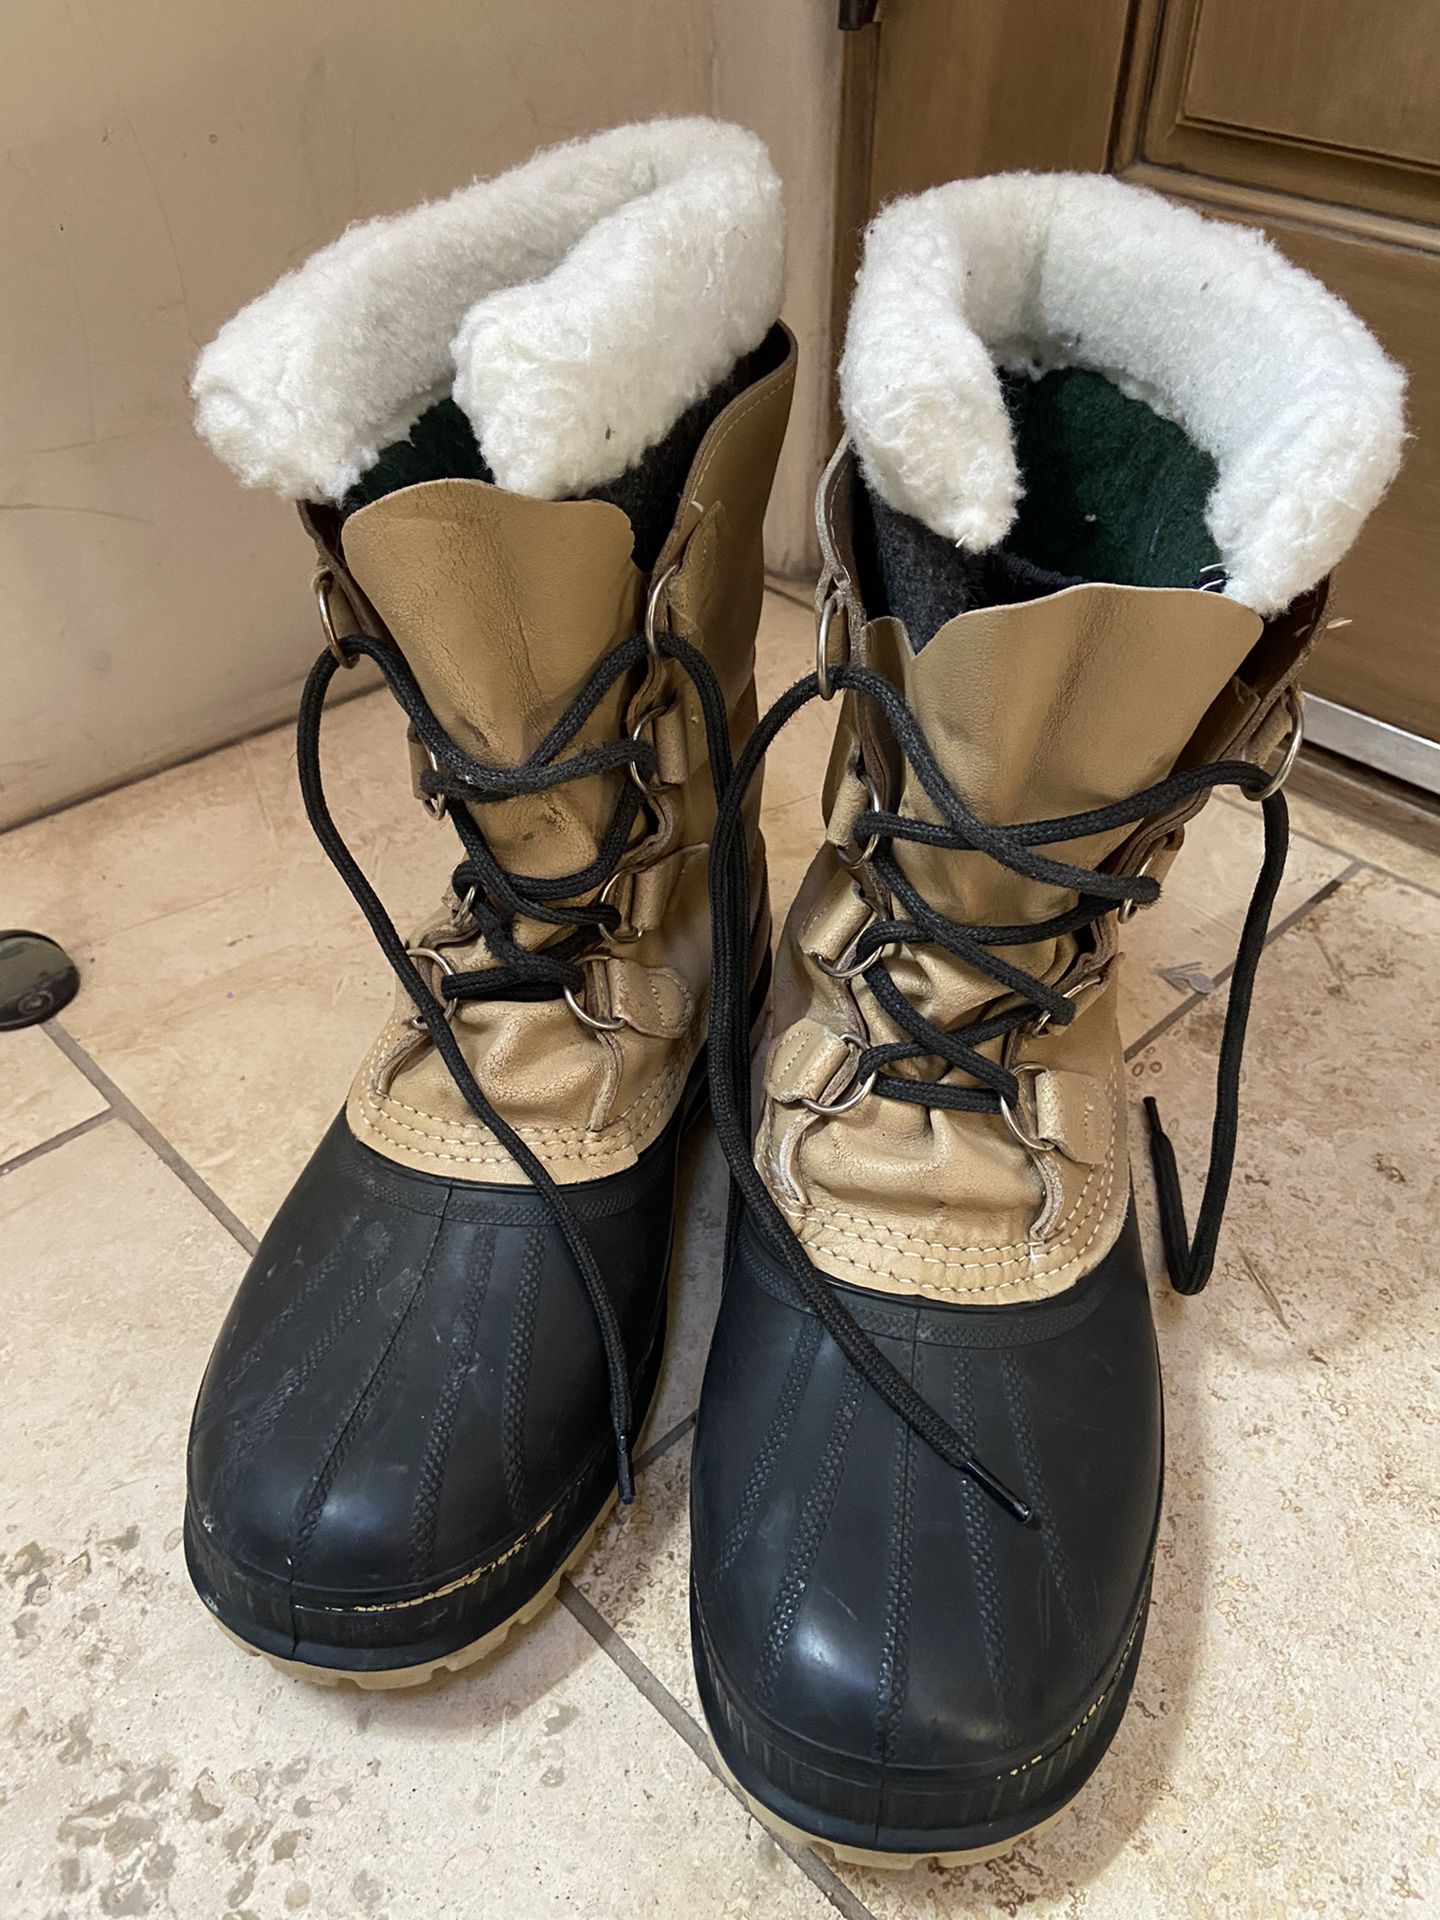 Men’s snow boots